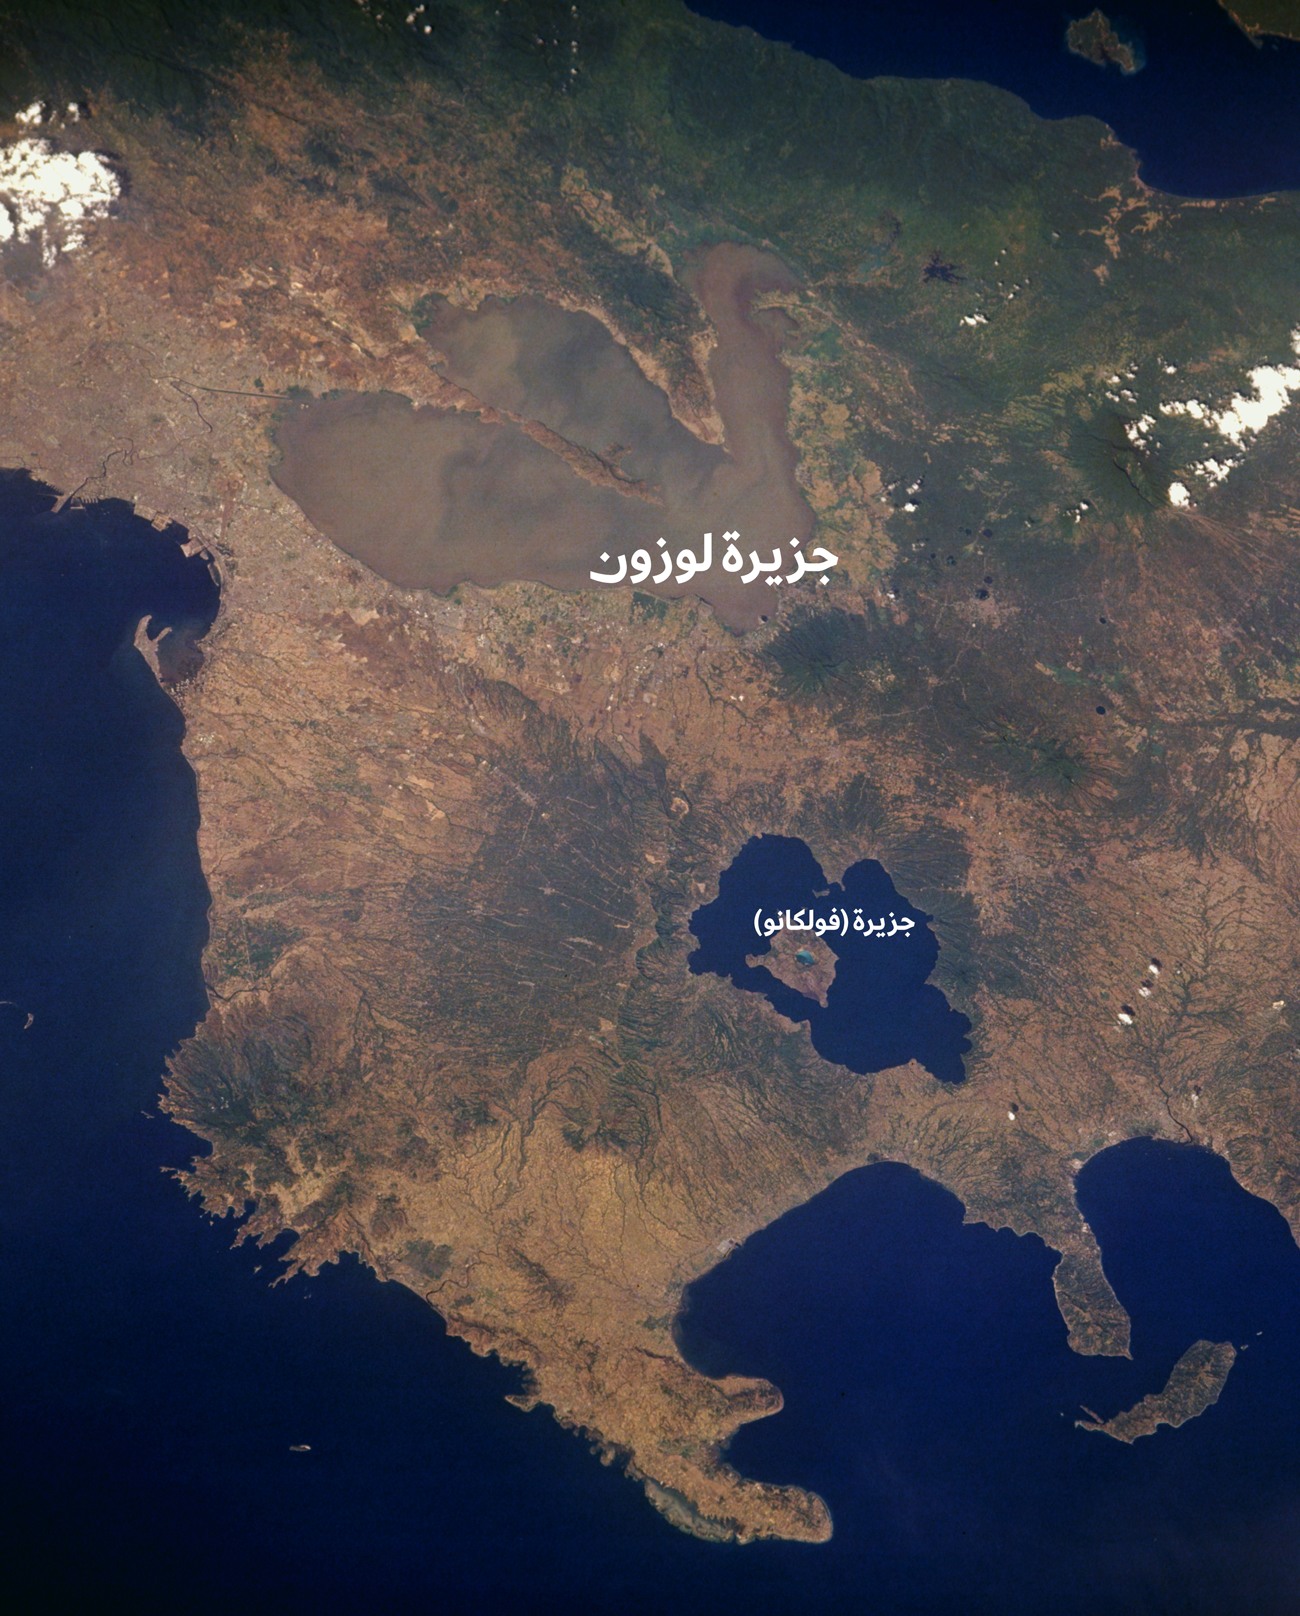 تُظهر هذه الصورة الملتقطة من محطة الفضاء الدولية بحيرة (تال) مع جزيرة (فولكانو) التي تحتوي على بحيرة (كراتر)، أما جزيرة (فولكان بوينت) فبالكاد مرئية